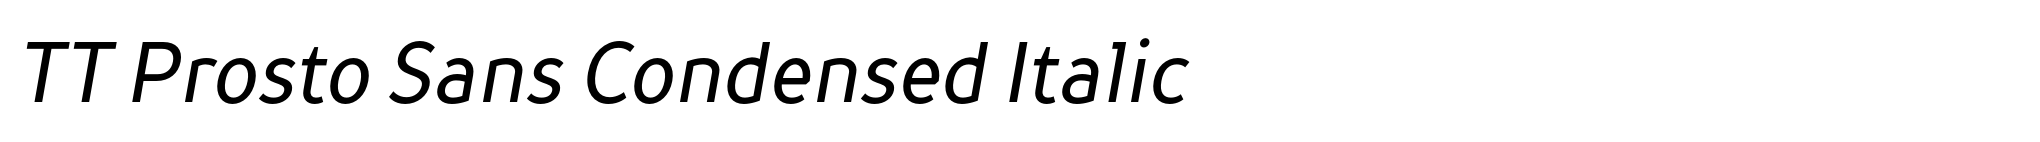 TT Prosto Sans Condensed Italic image